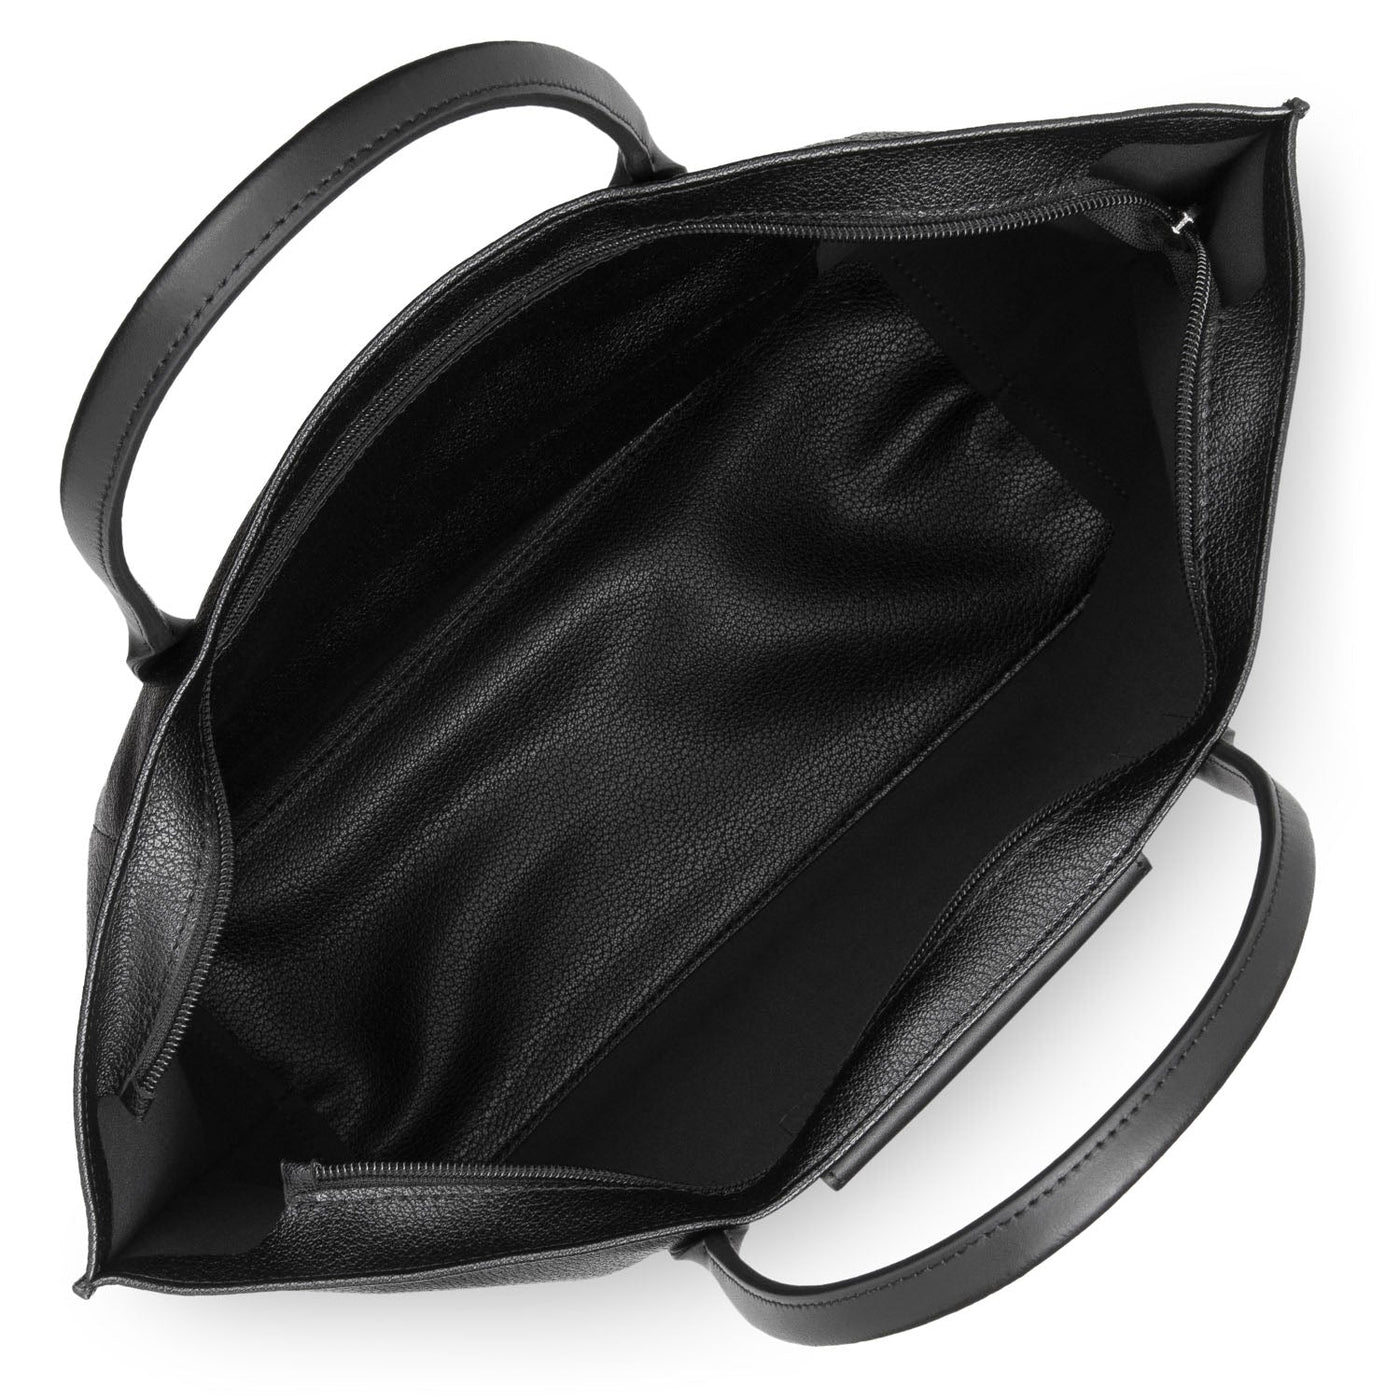 large tote bag - maya #couleur_noir